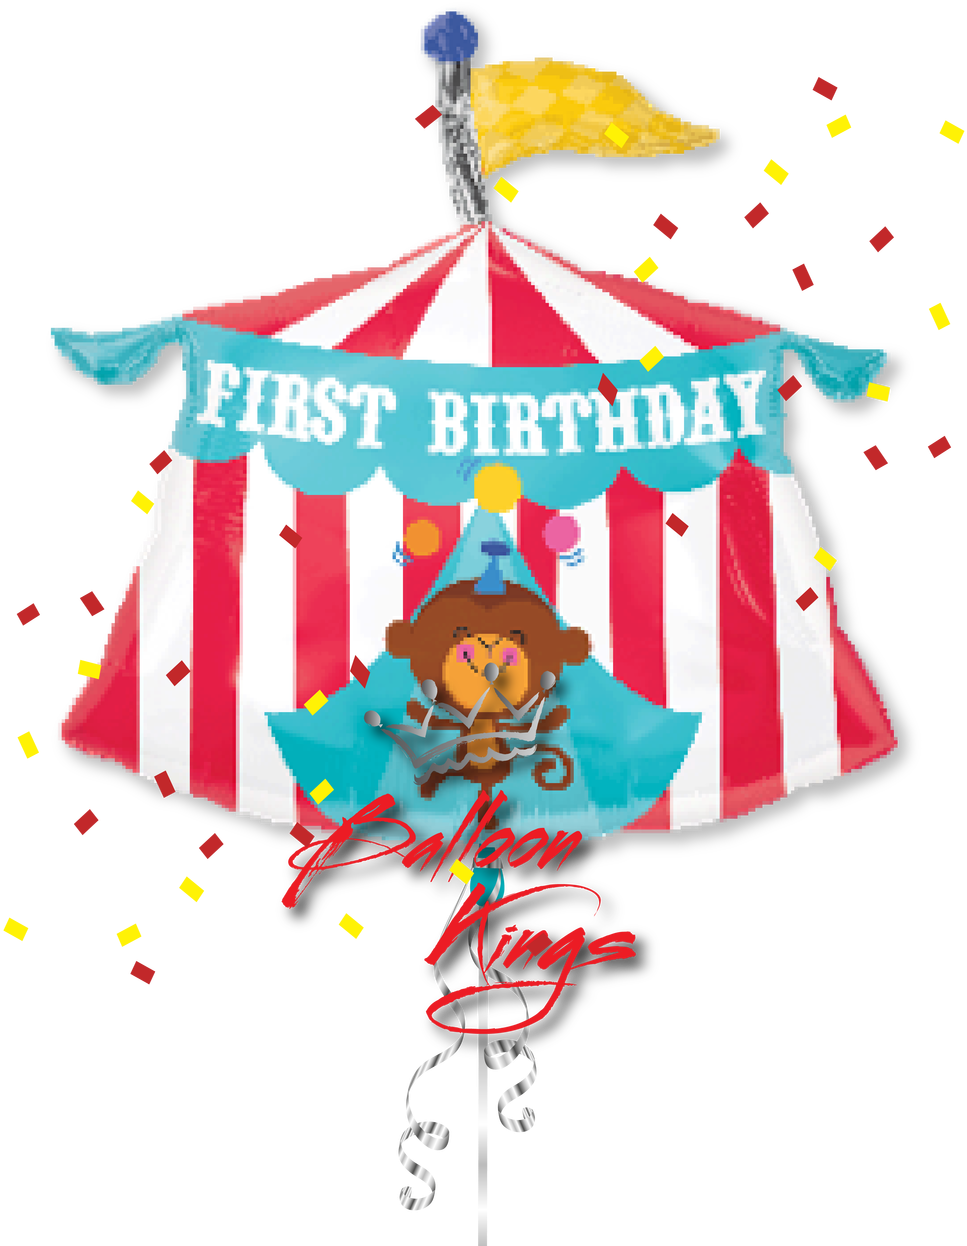 1st Birthday Circus Tent - Circus 1st Birthday Background (1280x1280)